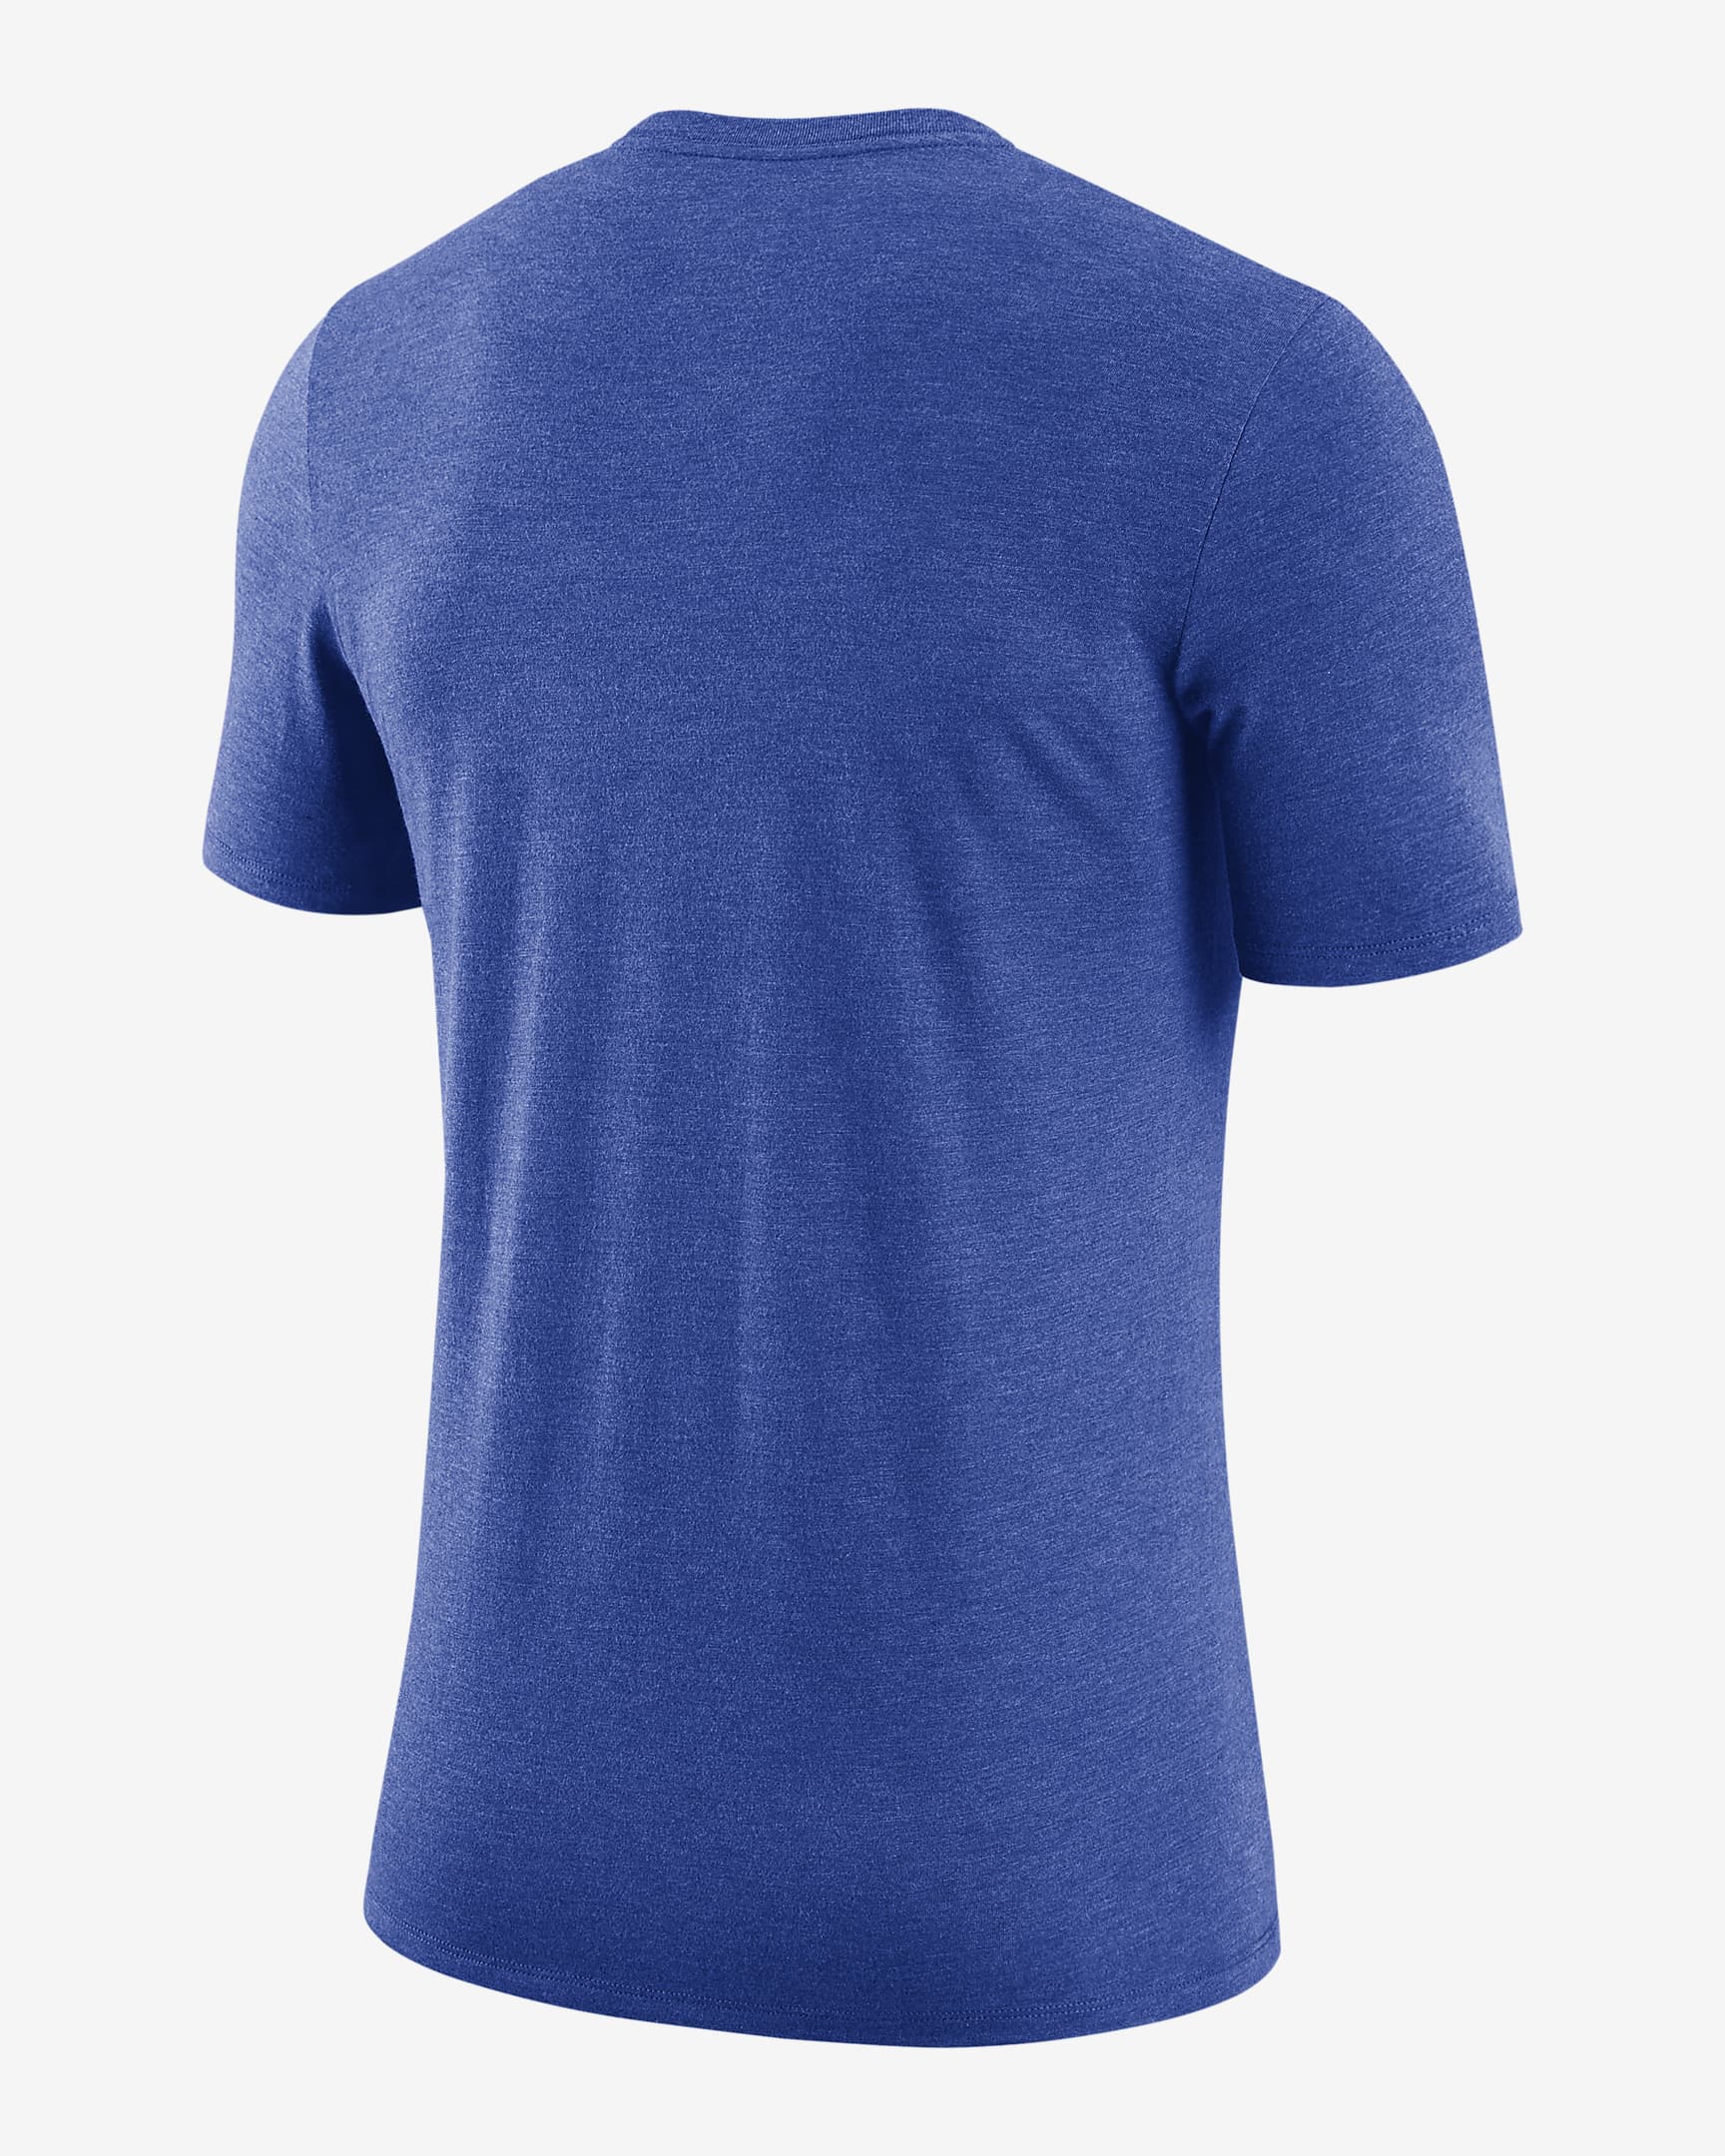 Duke Men's Nike College T-Shirt. Nike.com